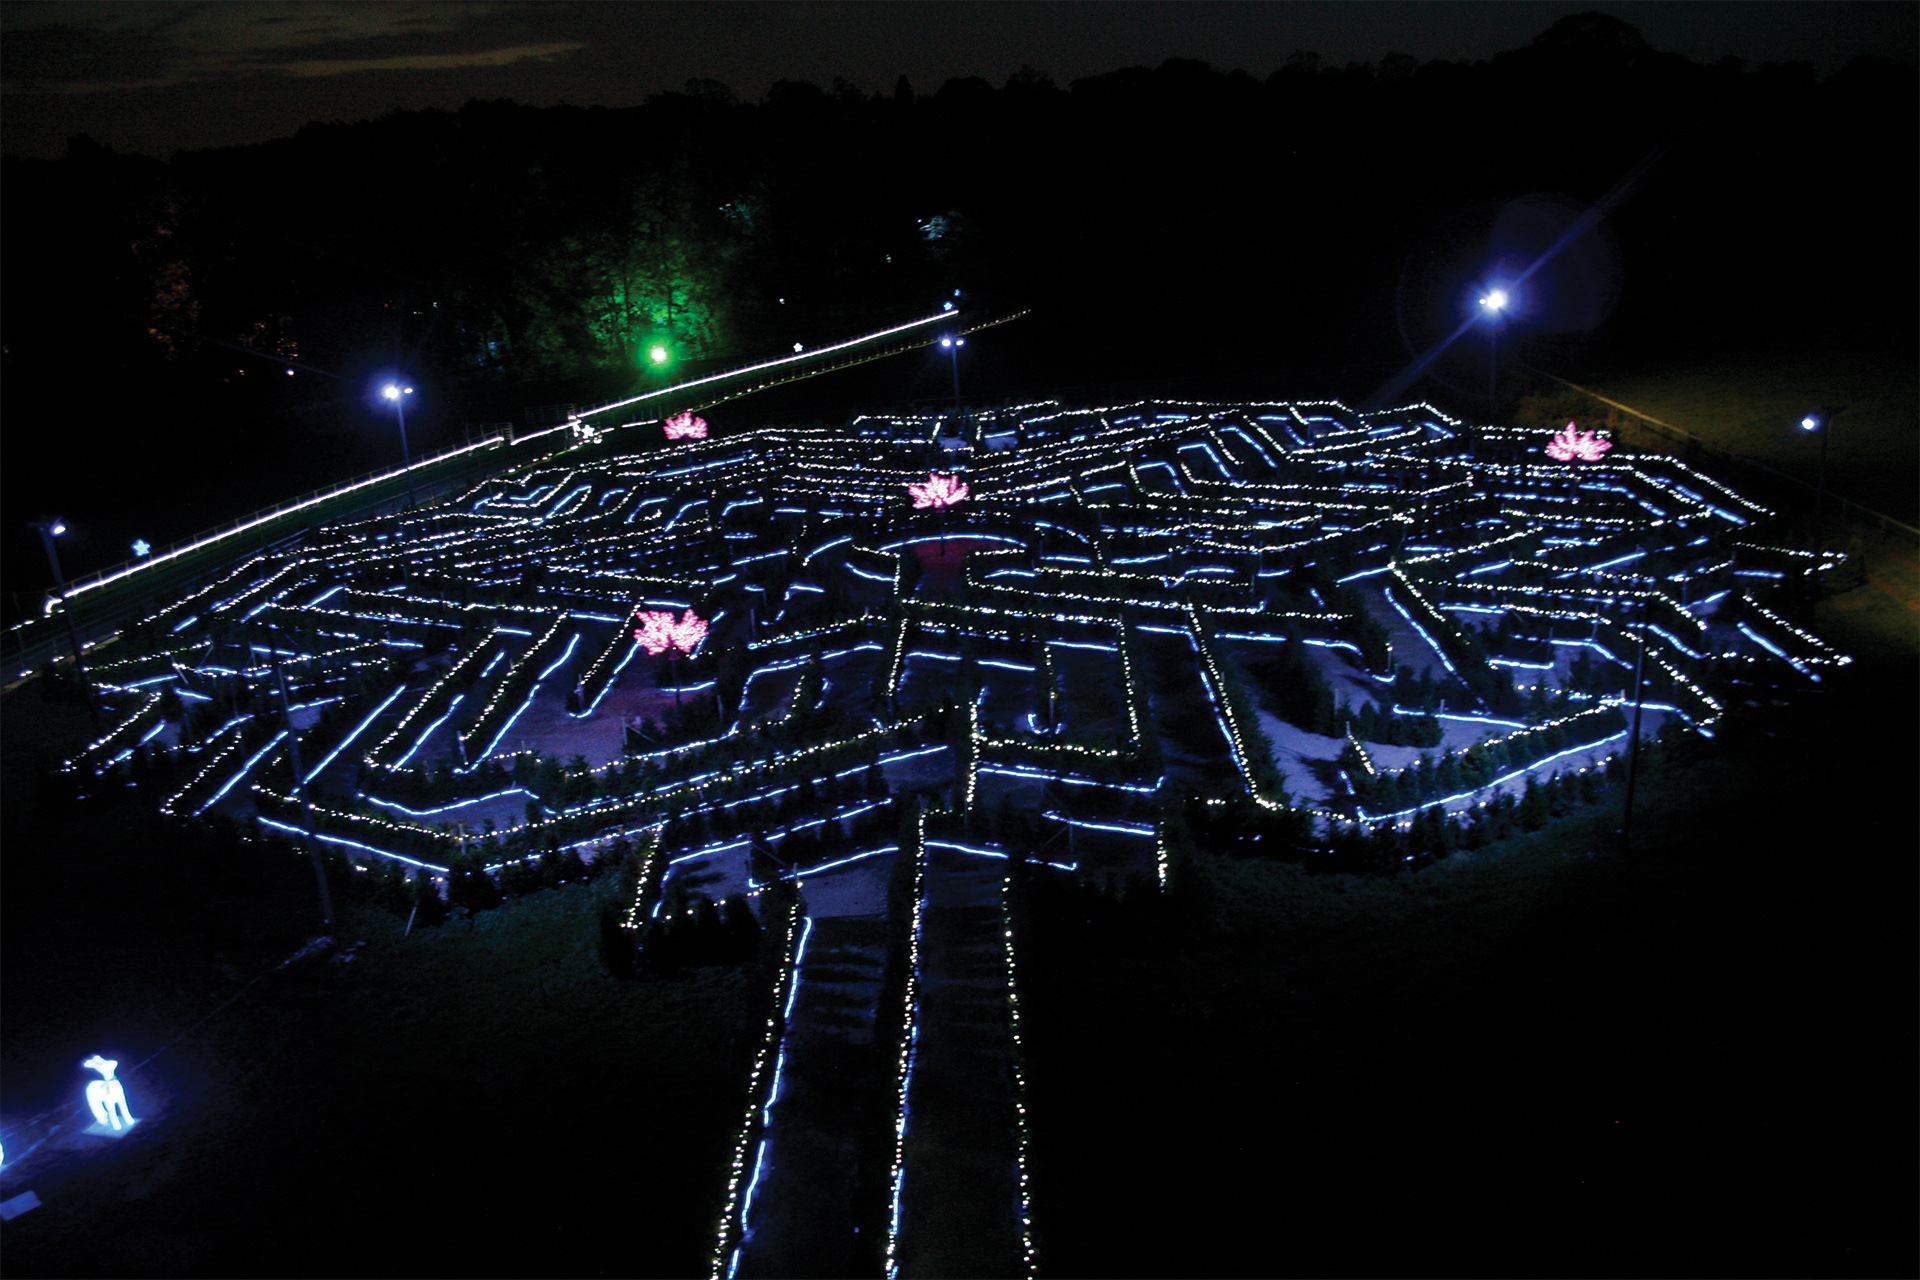 Stockeld Park Maze Illuminations